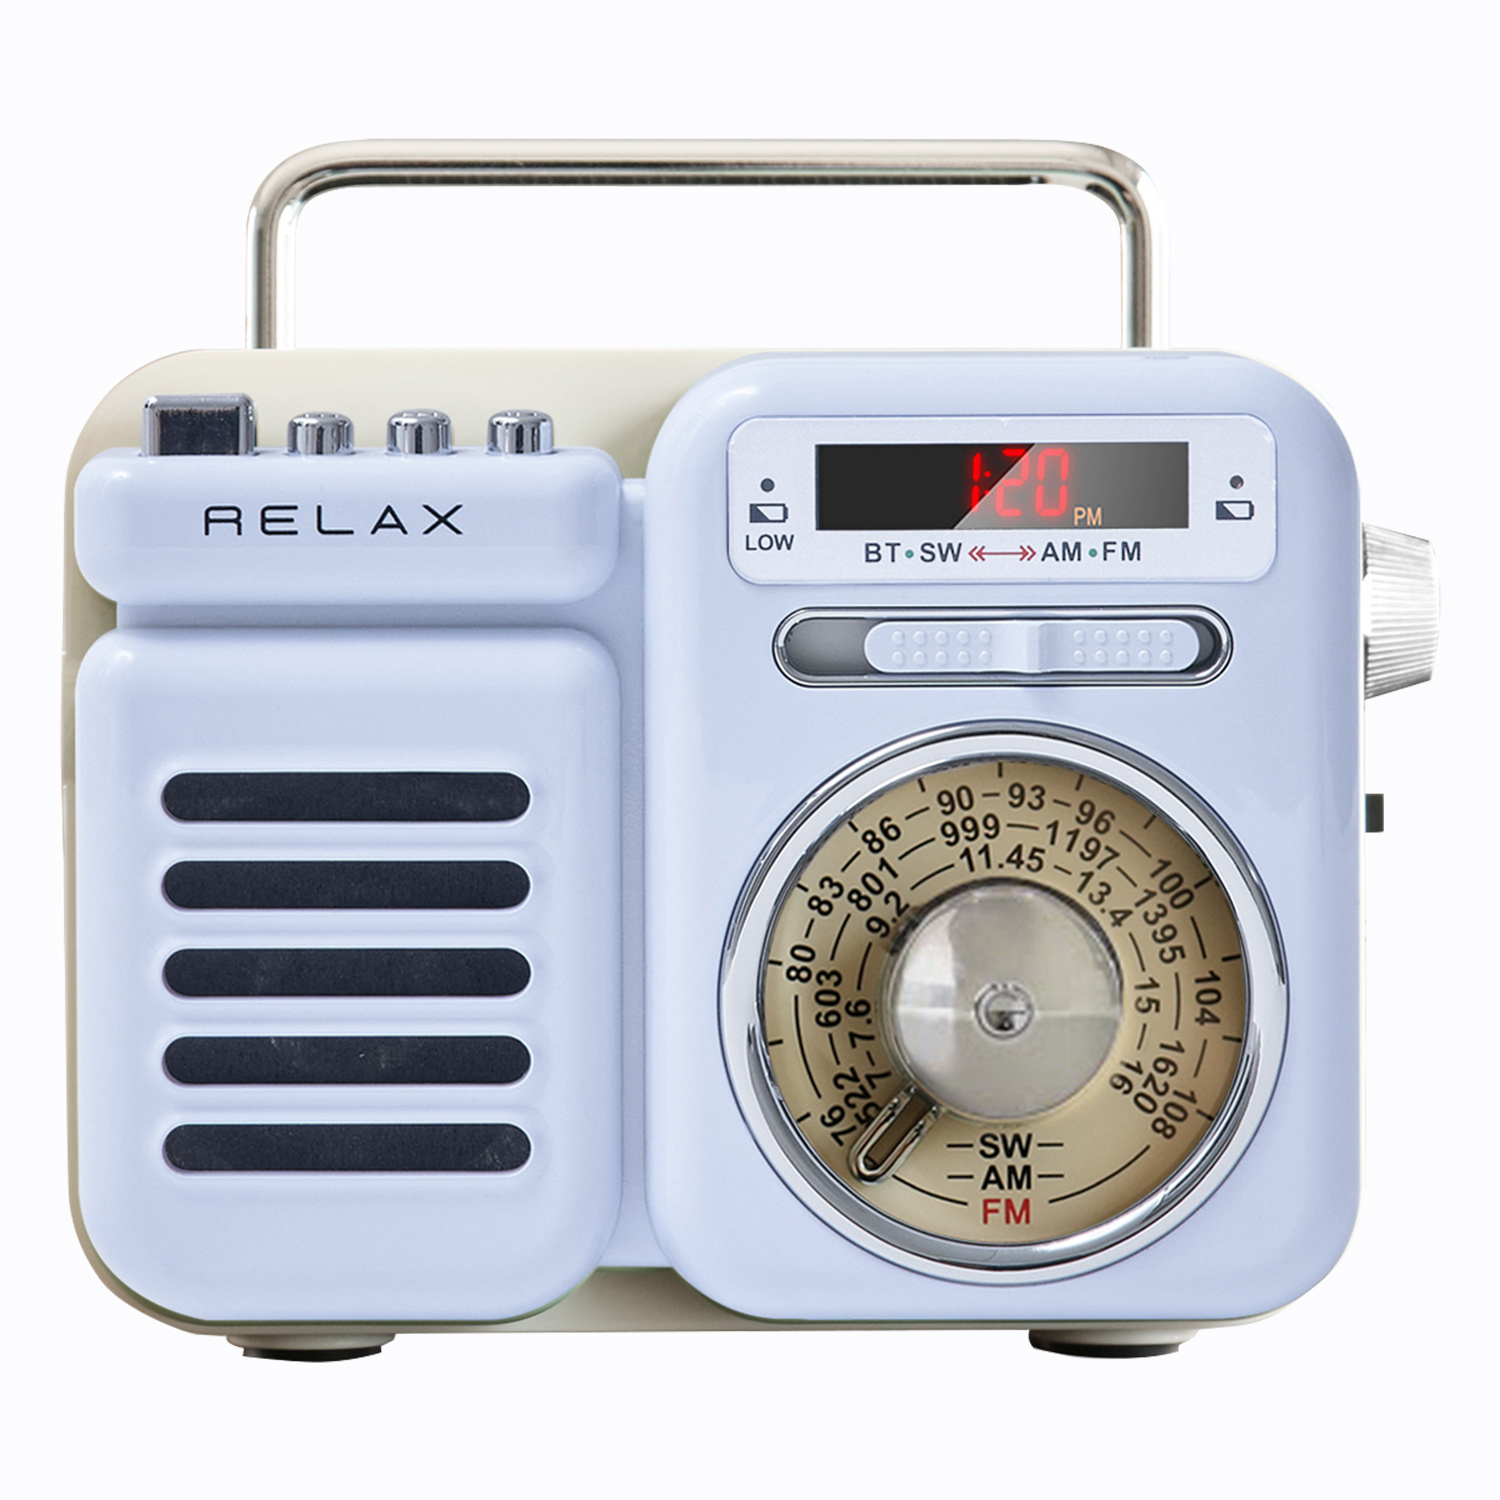 RELAX マルチ レトロ ラジオ 小型 携帯 防災用品 ライト アラーム SOS機能 モバイルバッ...